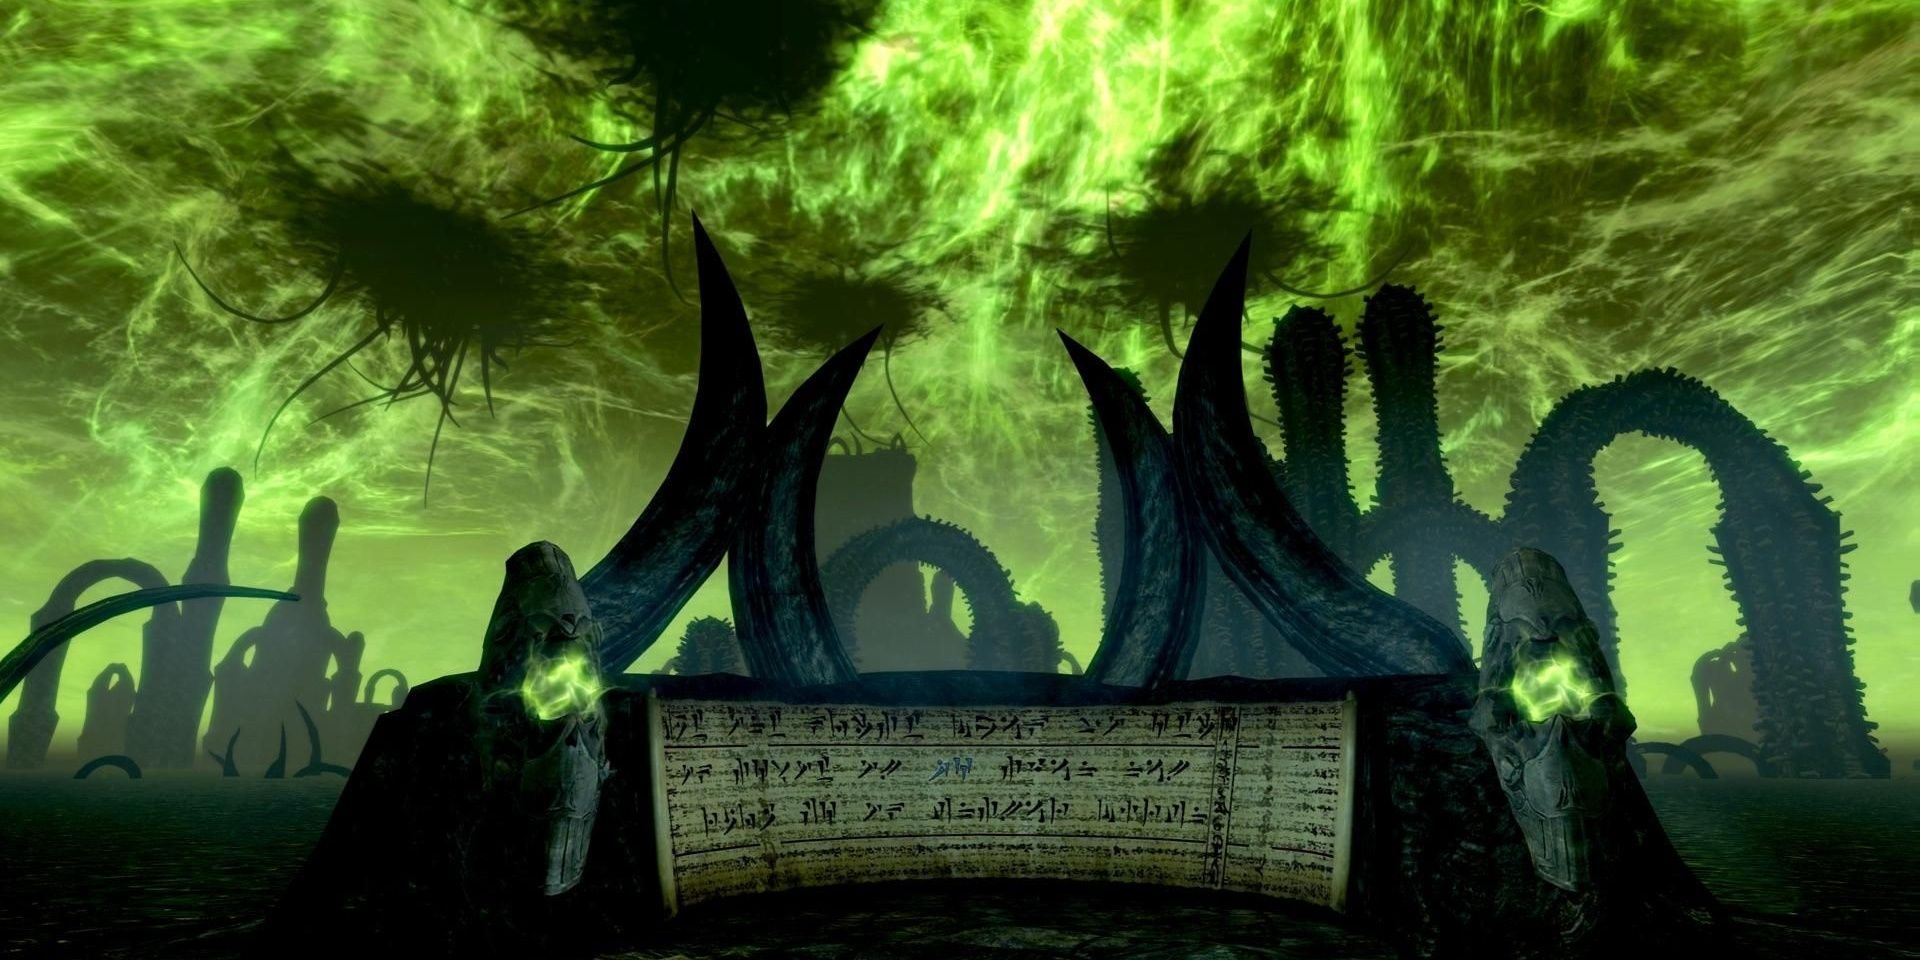 Apocrypha Oblivion Realm From Skyrim